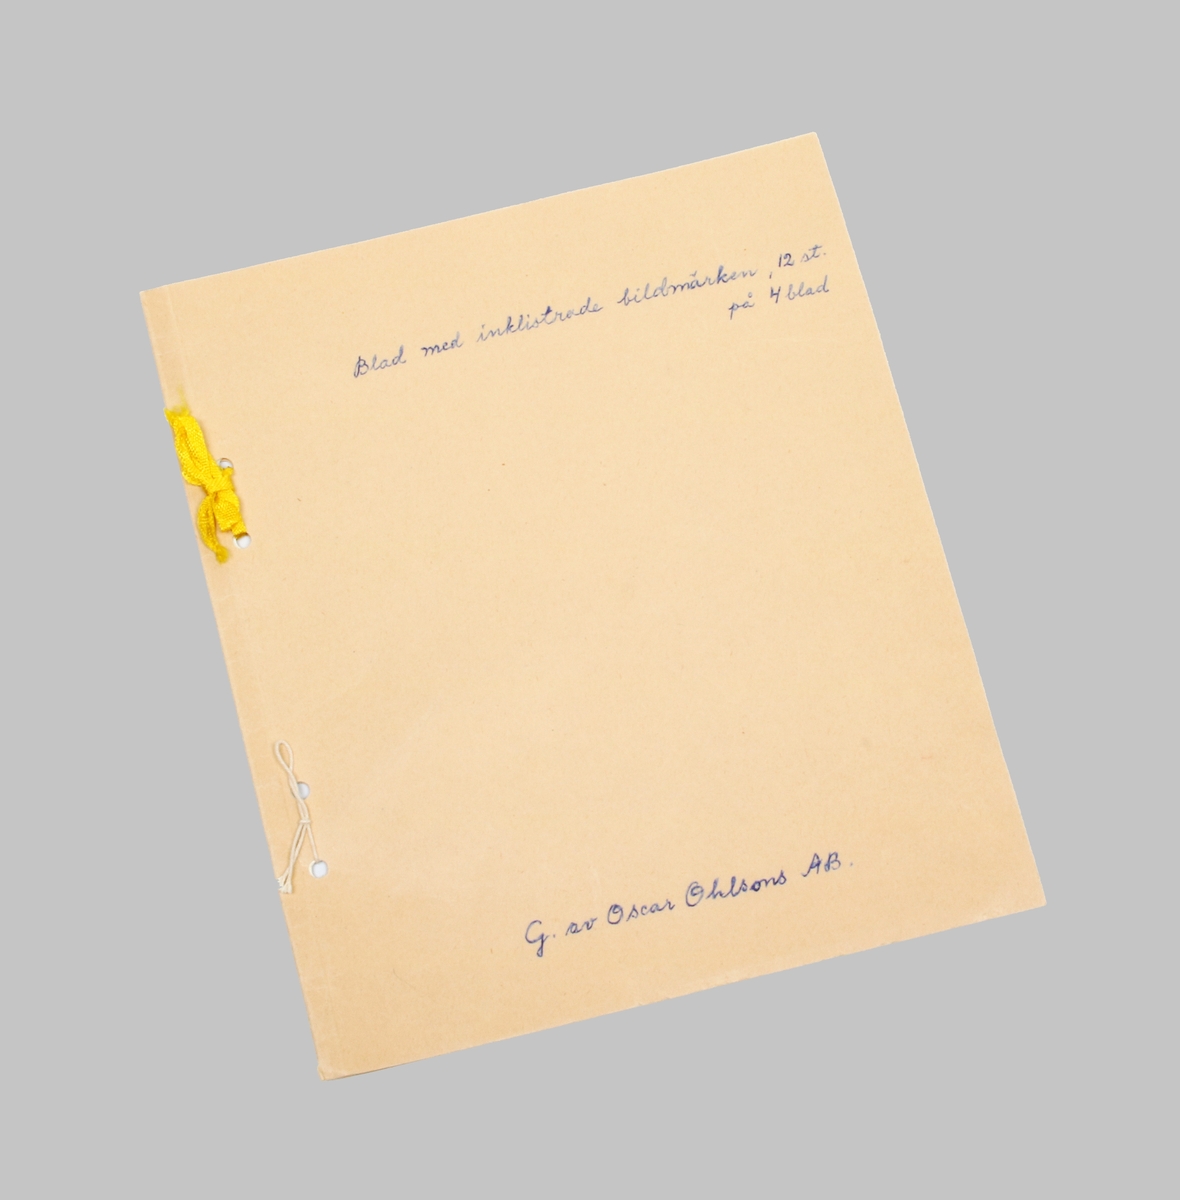 Häfte i ljusbrun papp. På omslaget skrivet i blått: "Blad med inklistrade bildmärken, 12 st på 4 blad", samt "G. av Oscar Ohlsons AB". Insidan med klistrade bildmärken i olika former och färger.